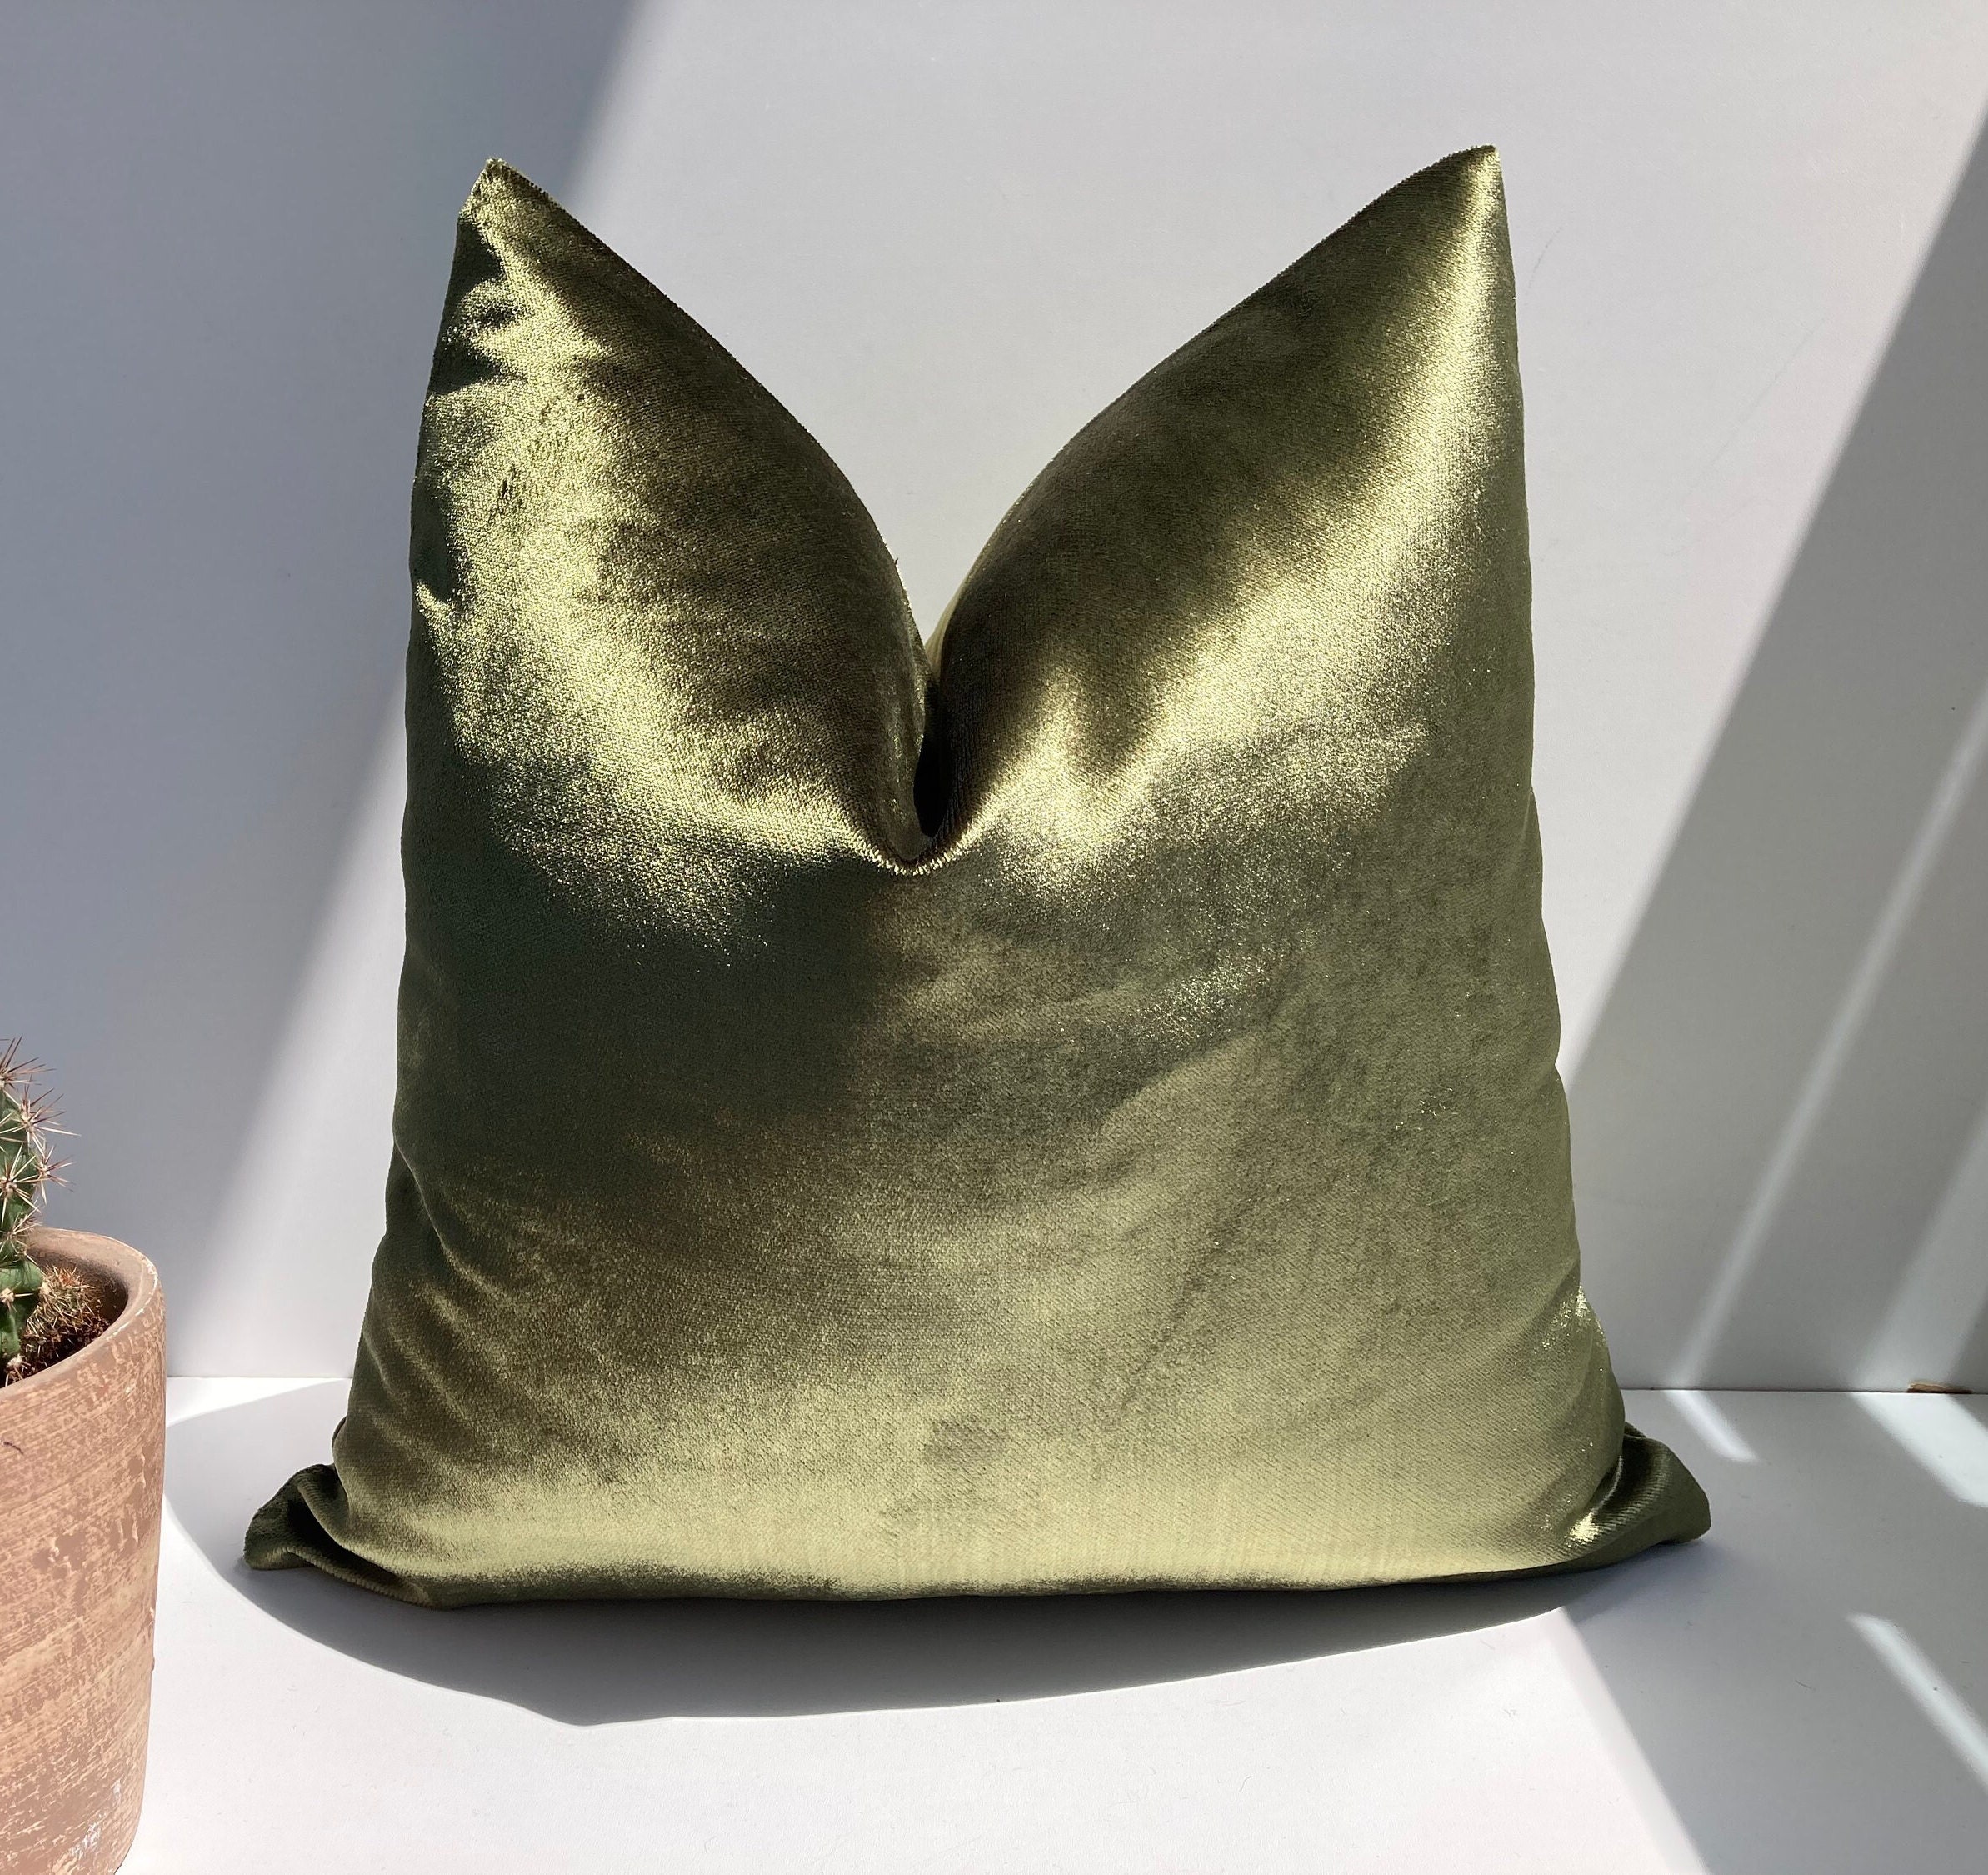 Green Leafy Velvet Pillow Cover Set of 2 – LA JOLIE MUSE